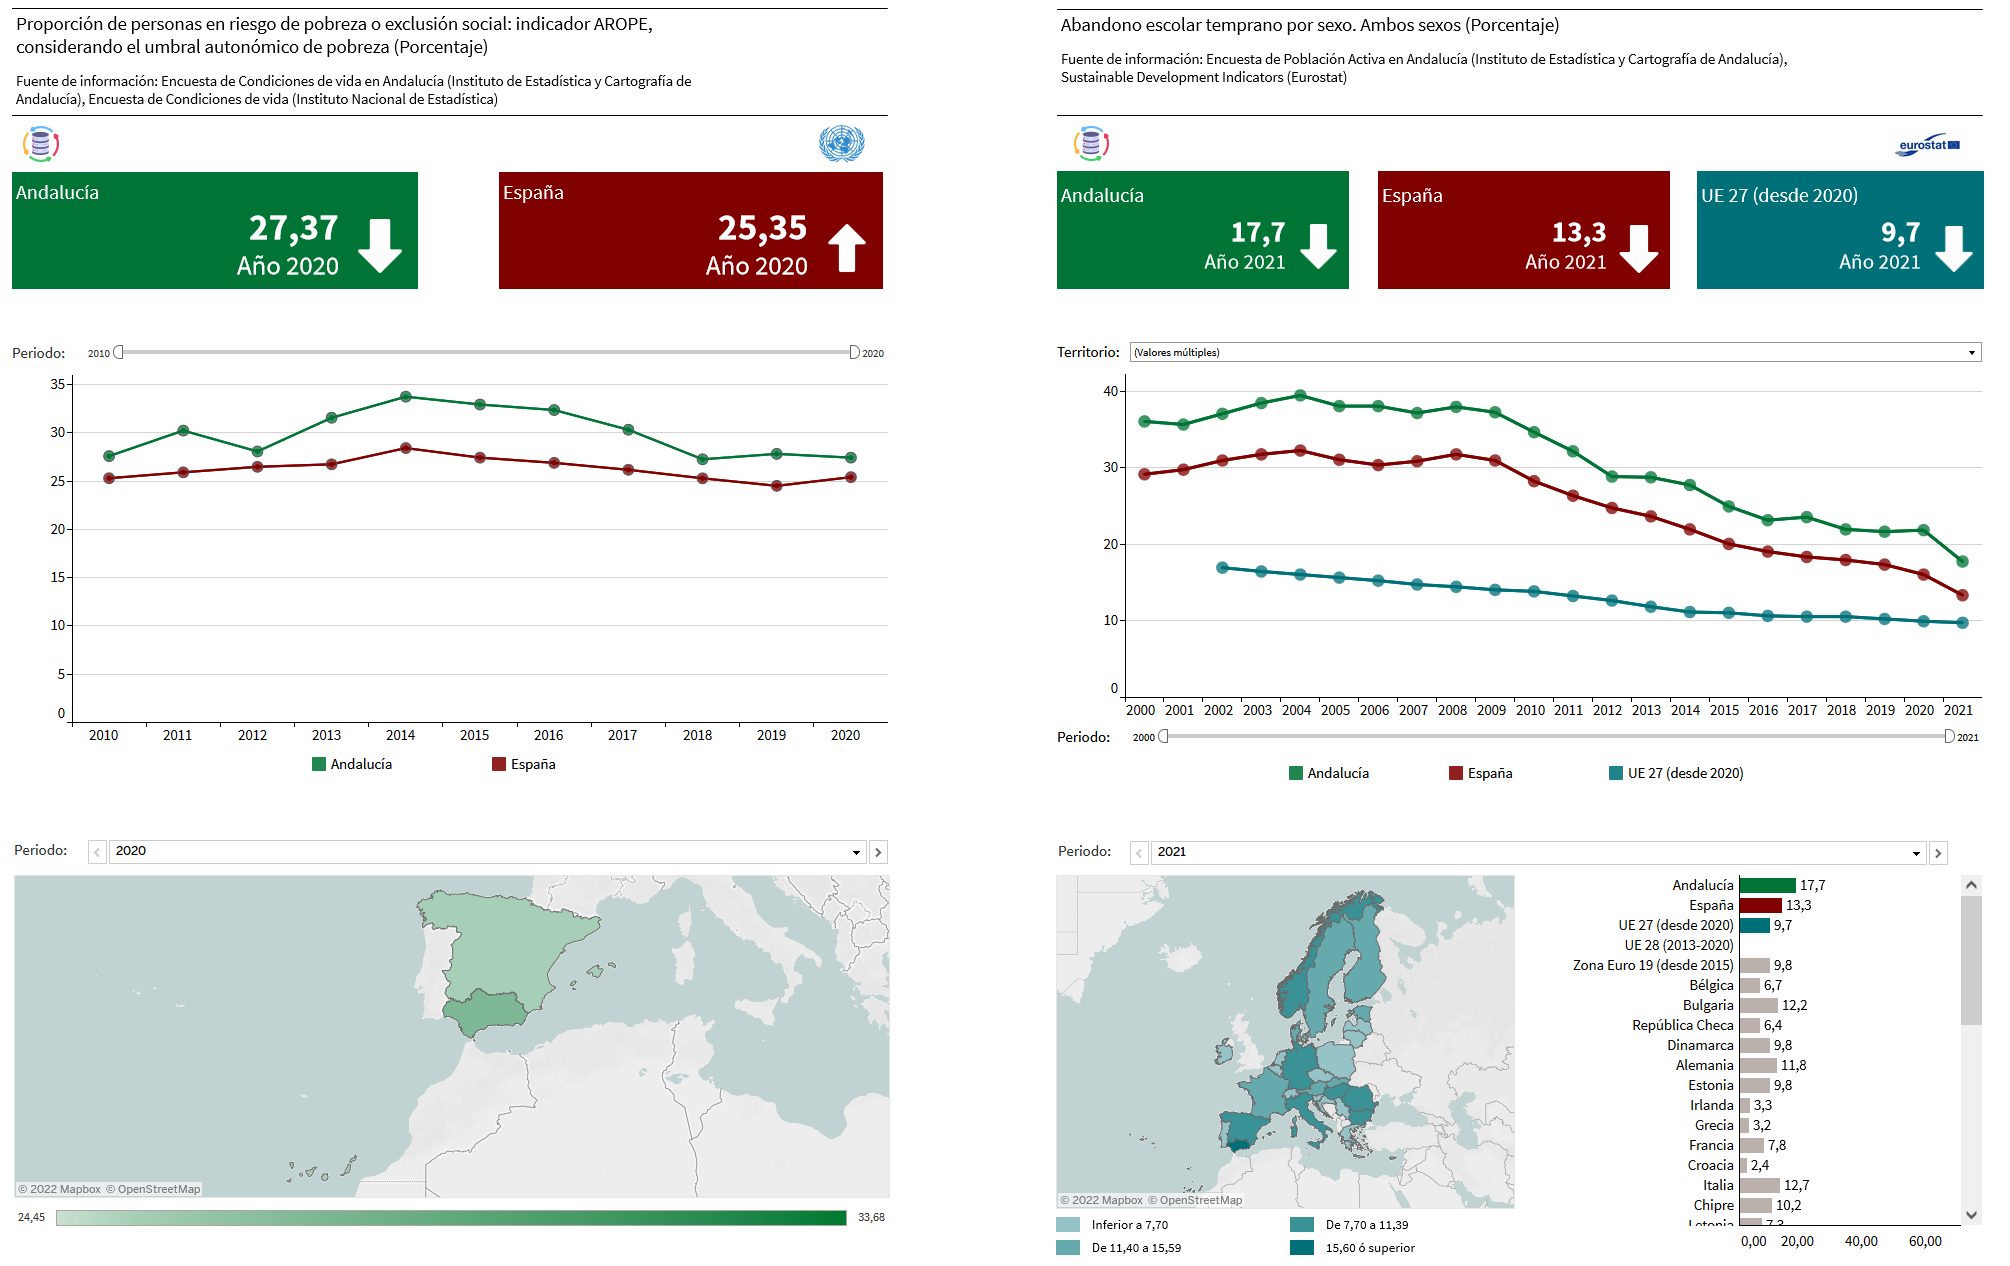 Visualizaciones interactivas de un indicador de Naciones Unidas y un indicador de Eurostat